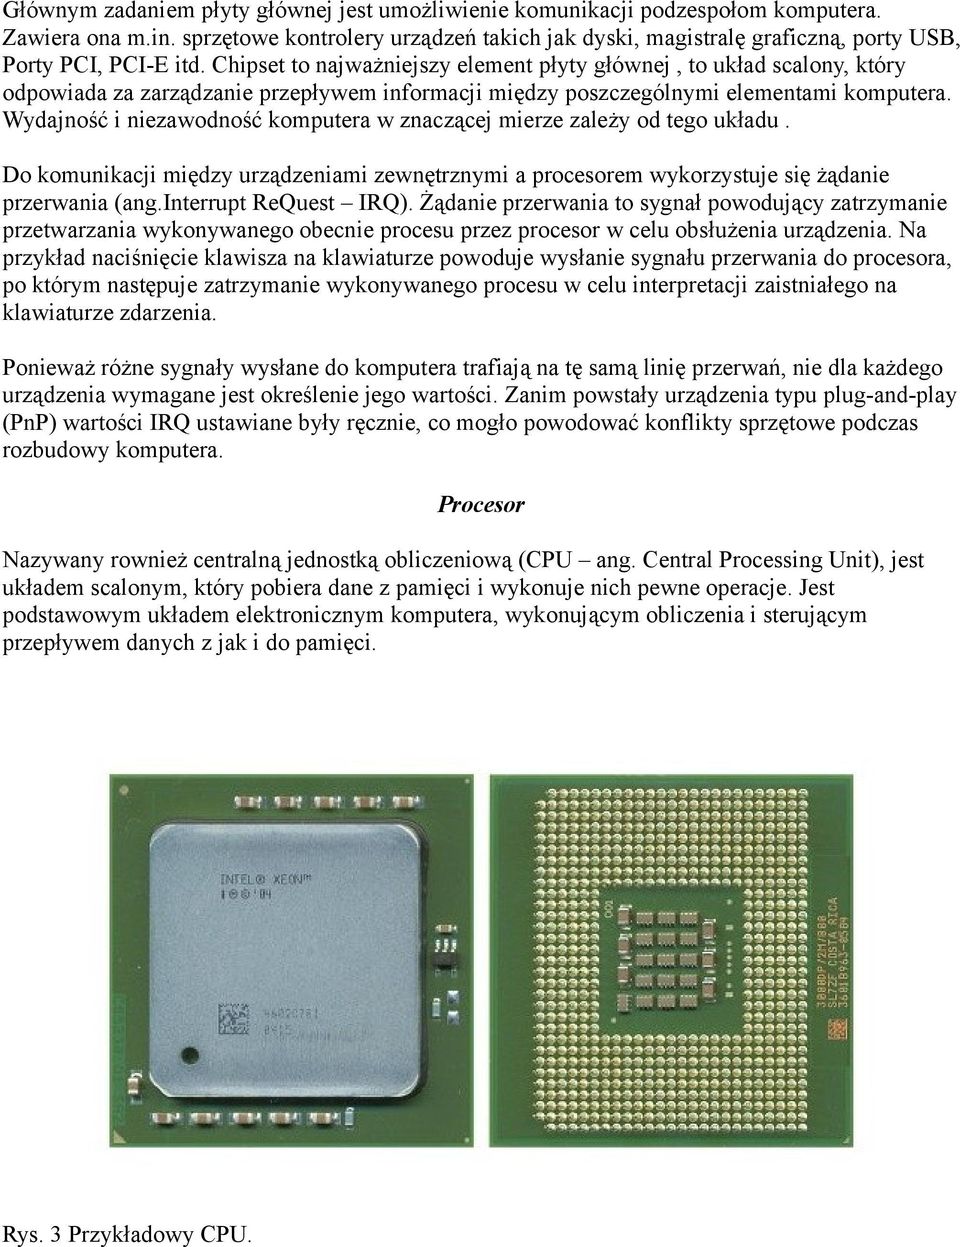 Chipset to najważniejszy element płyty głównej, to układ scalony, który odpowiada za zarządzanie przepływem informacji między poszczególnymi elementami komputera.